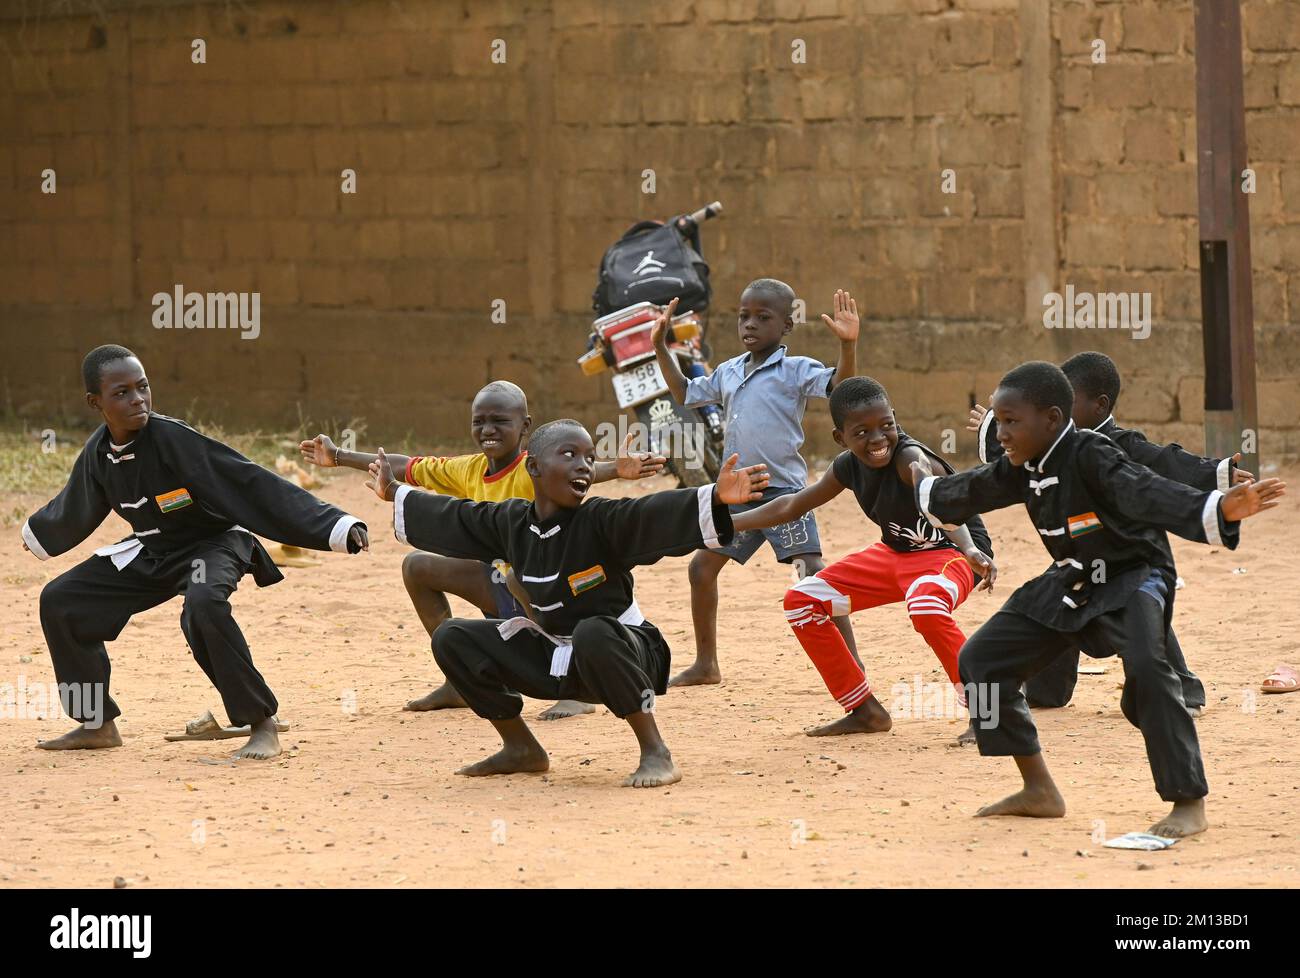 NÍGER, Niamey, niños haciendo judo deportes en la calle / Kinder beim Judo Sport auf der Straße Foto de stock